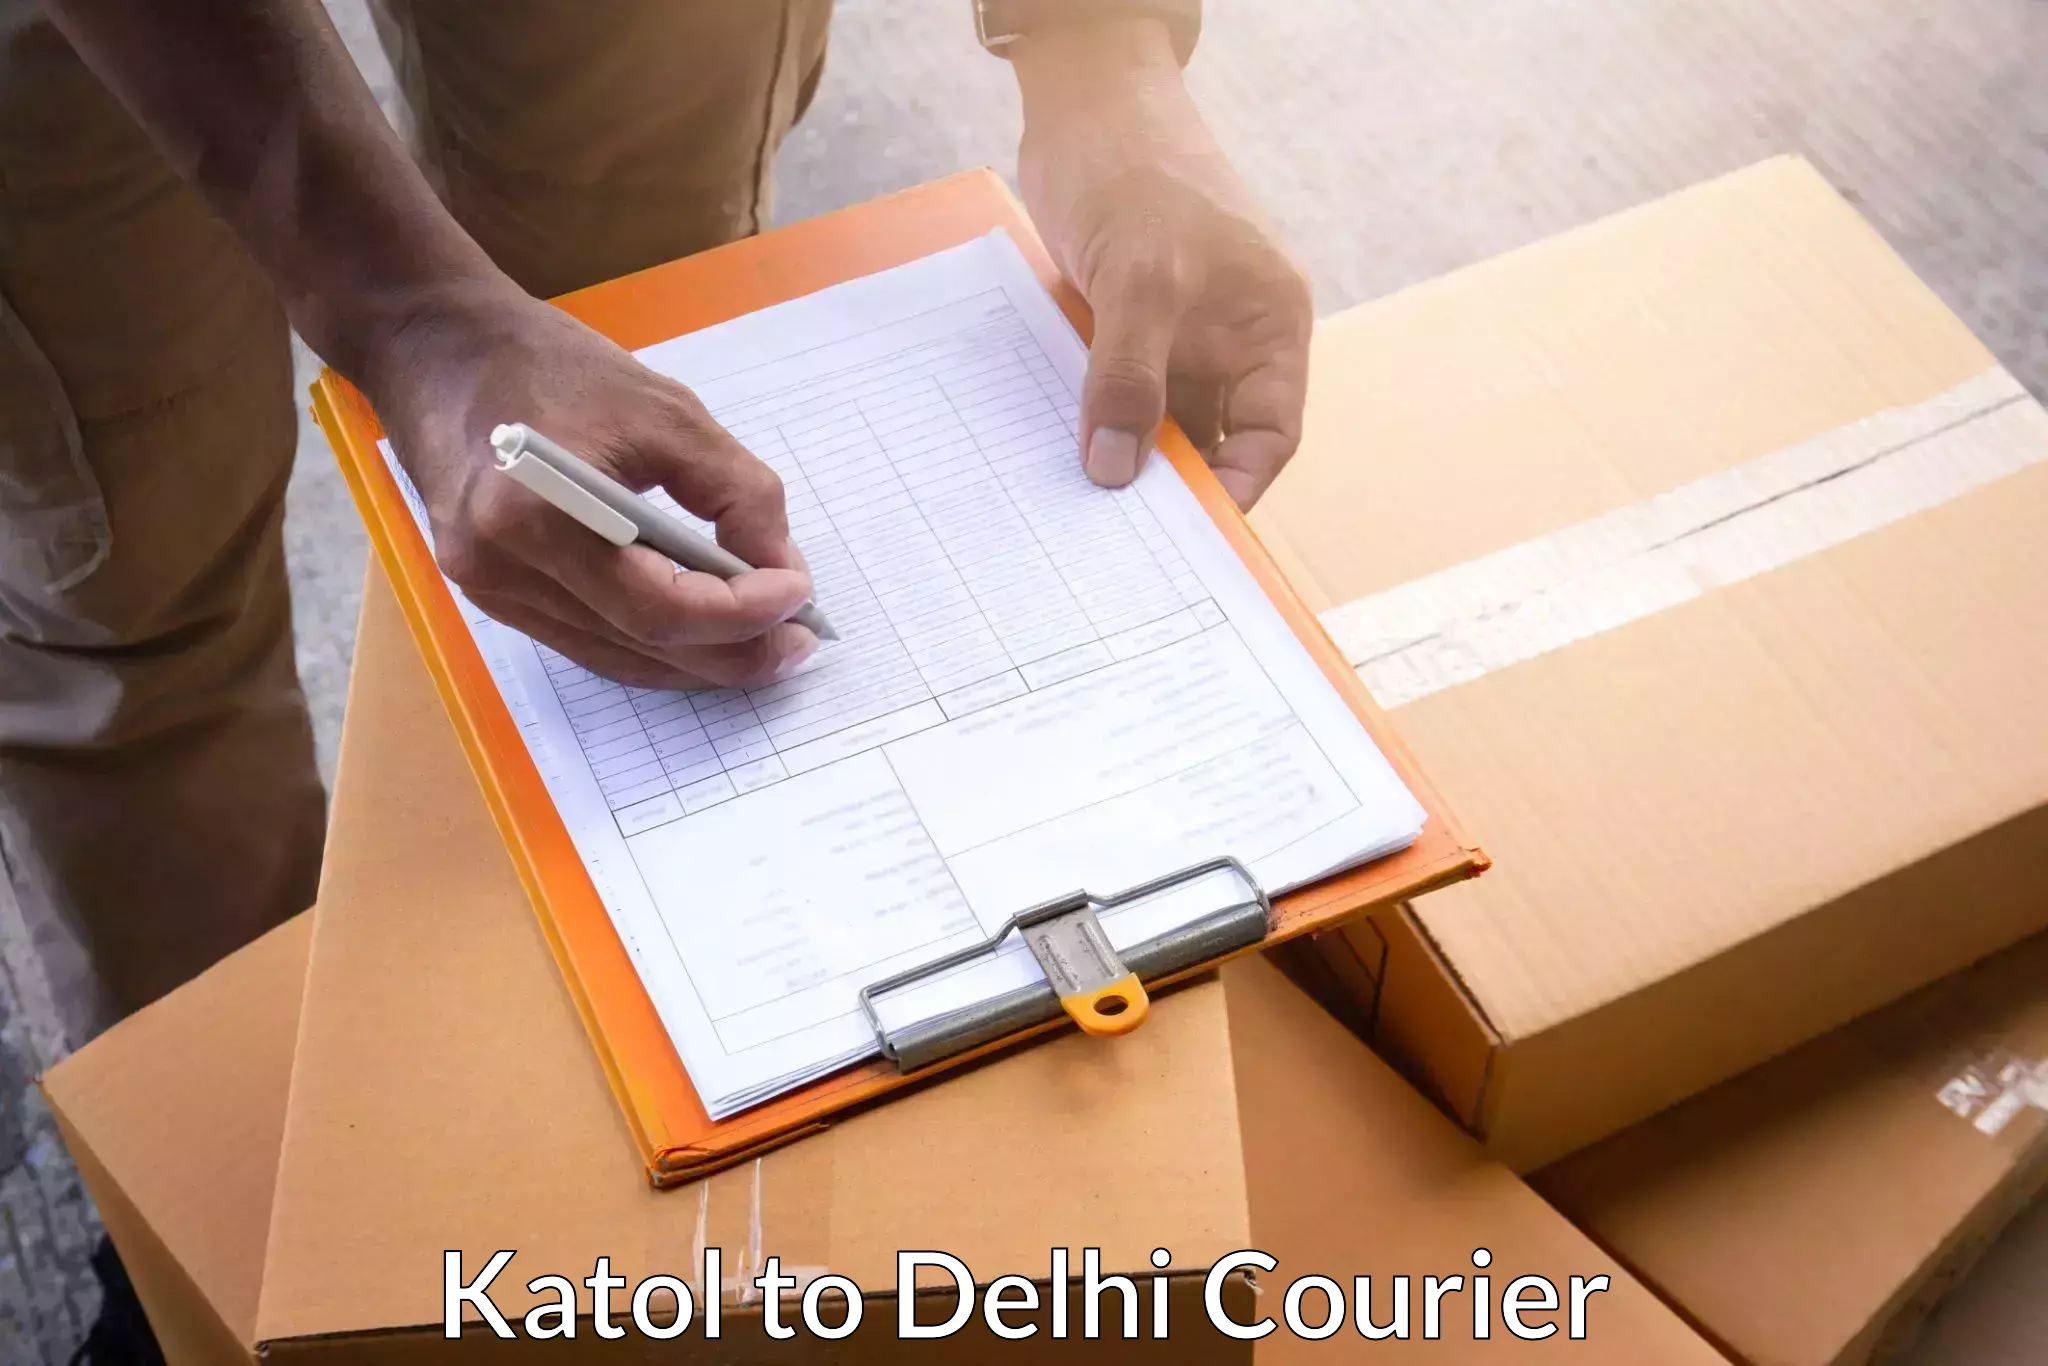 Comprehensive shipping network Katol to NIT Delhi